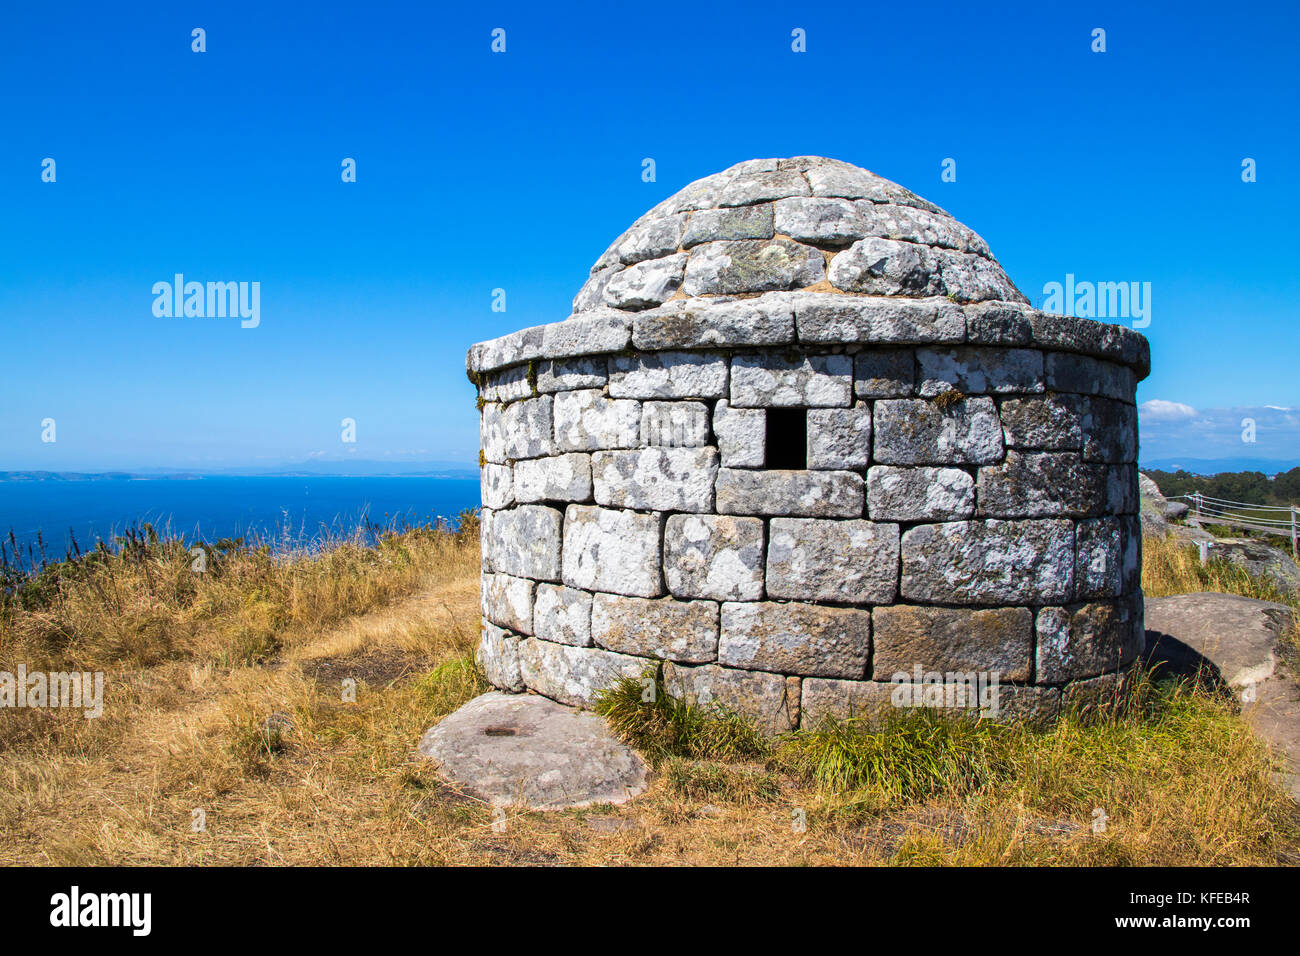 The Facho of Donon, an ancient stone lighthouse for guiding sailors in Monte do Facho, Cangas, Galicia, Spain Stock Photo